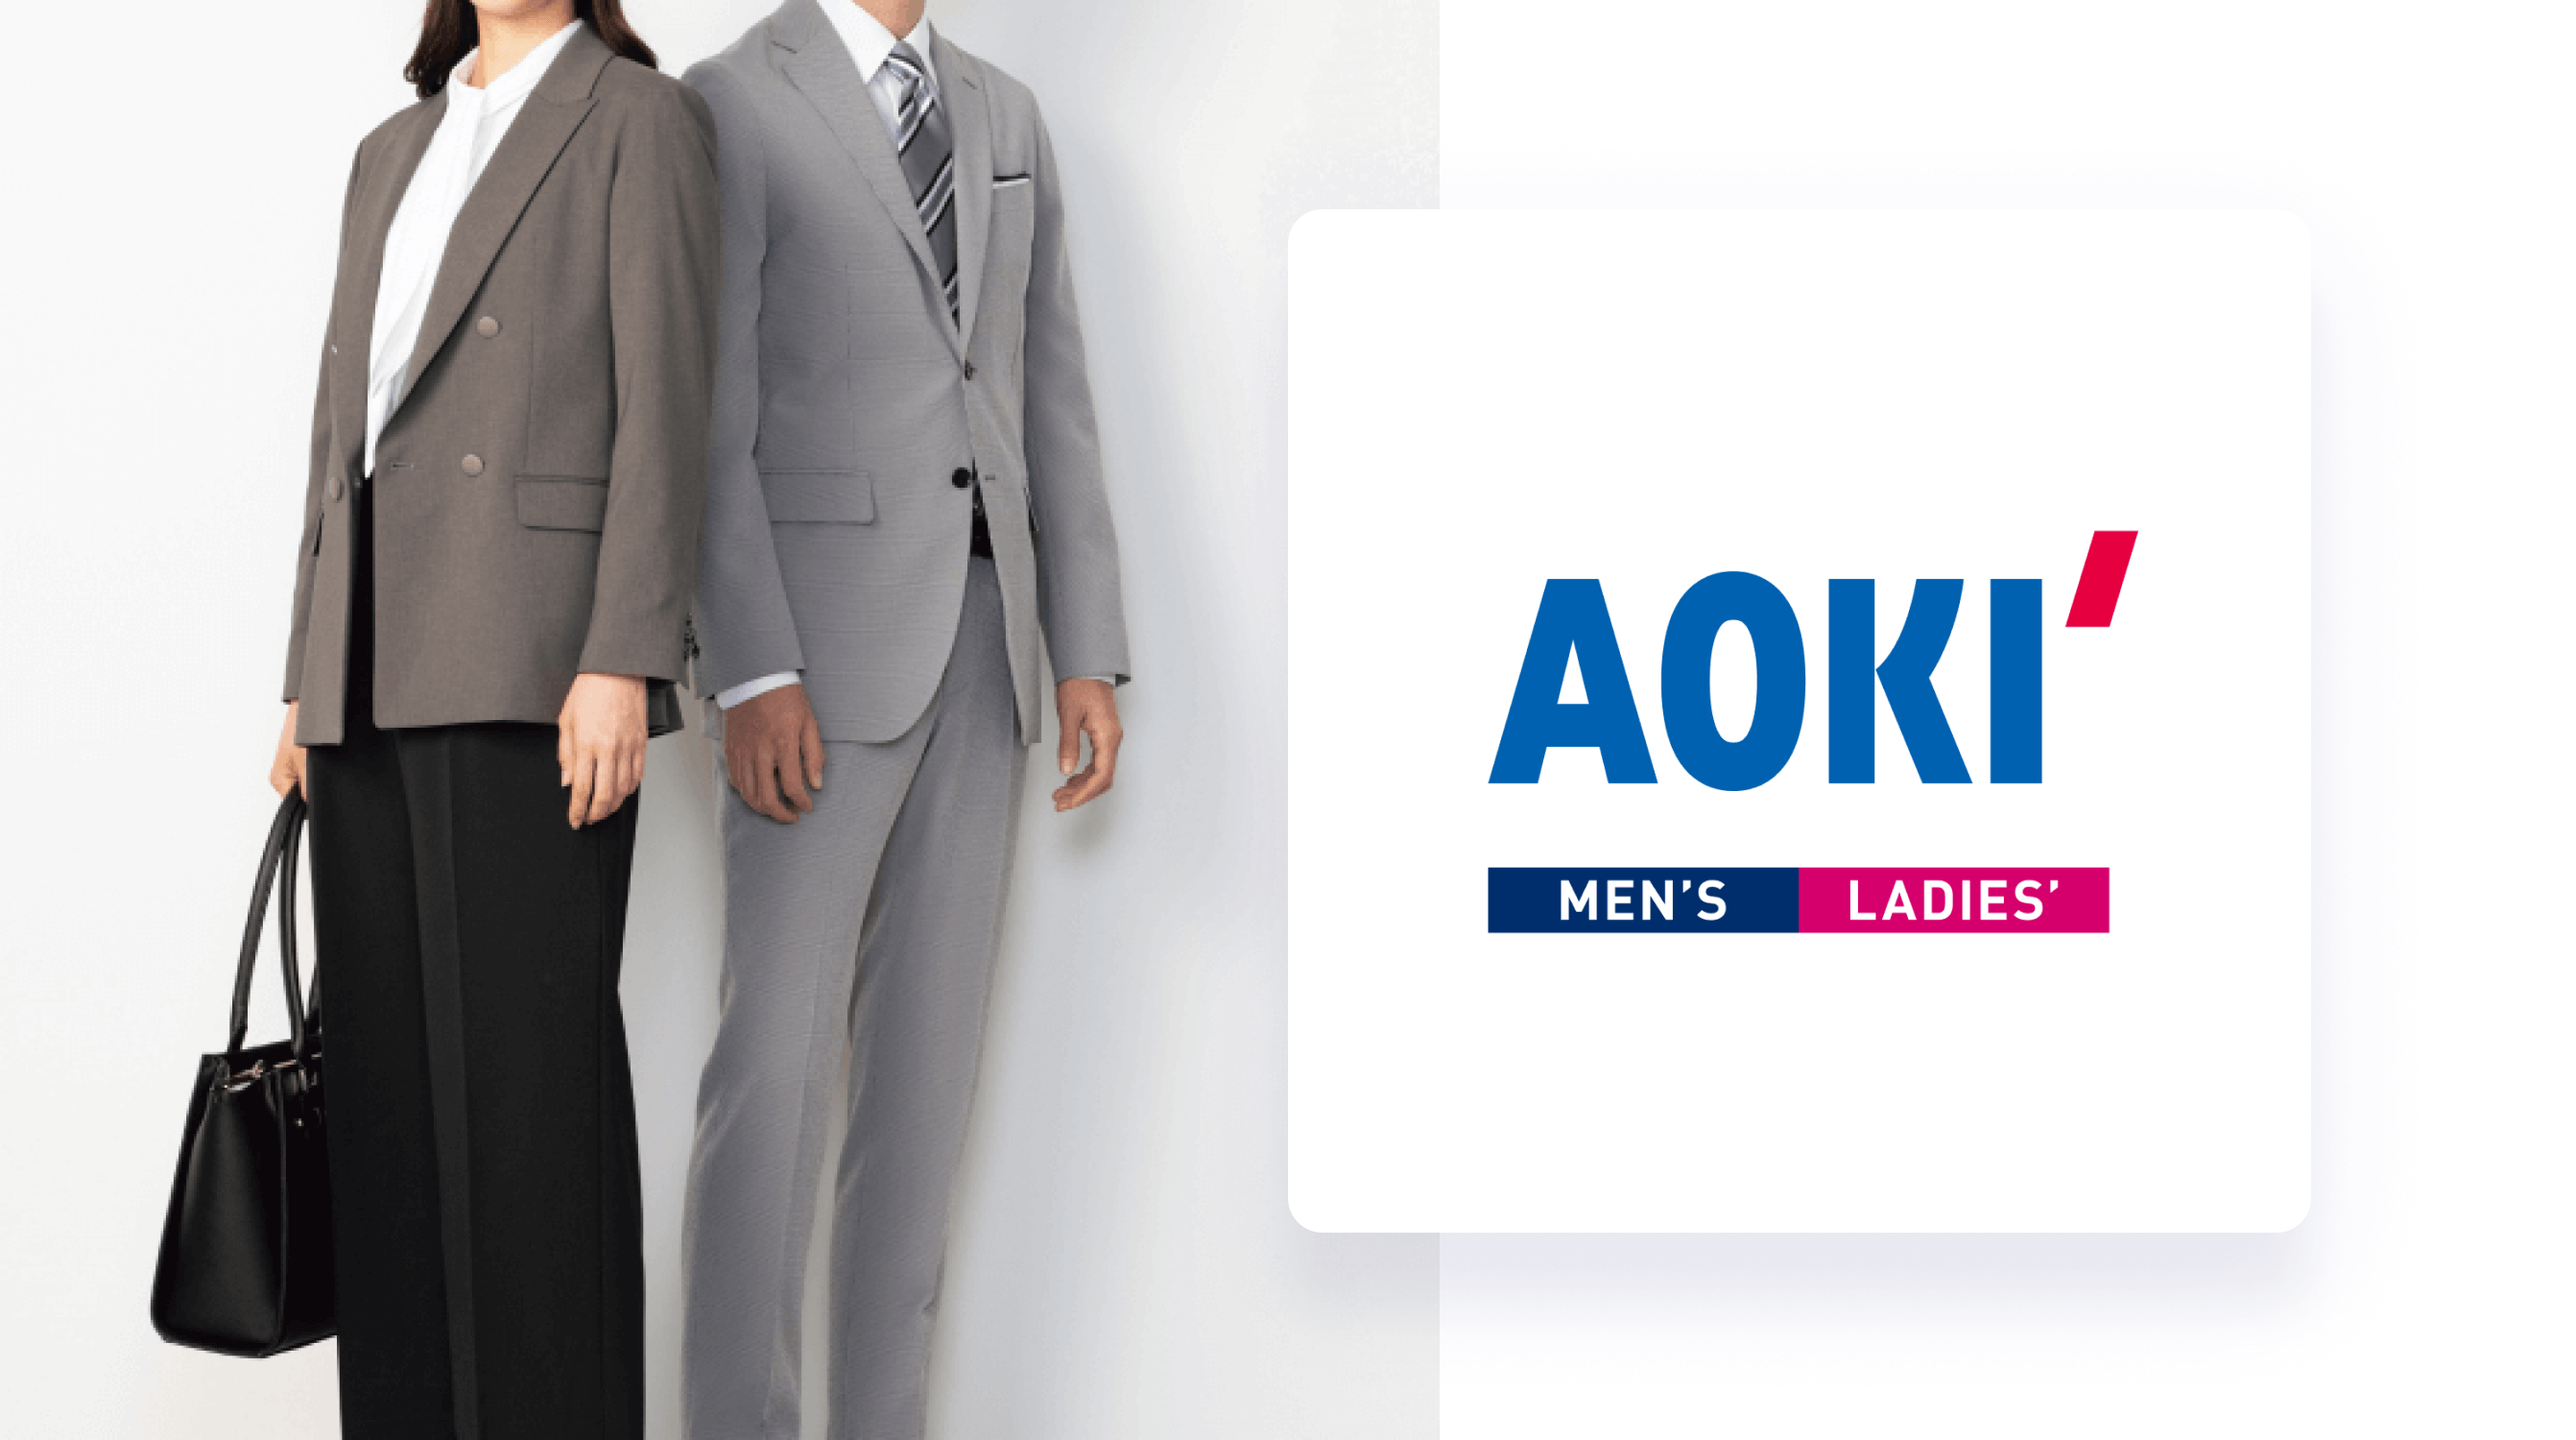 Smartpay利用ガイド4 — Smartpayで ファッションブランド「AOKI」でお買い物をする方法